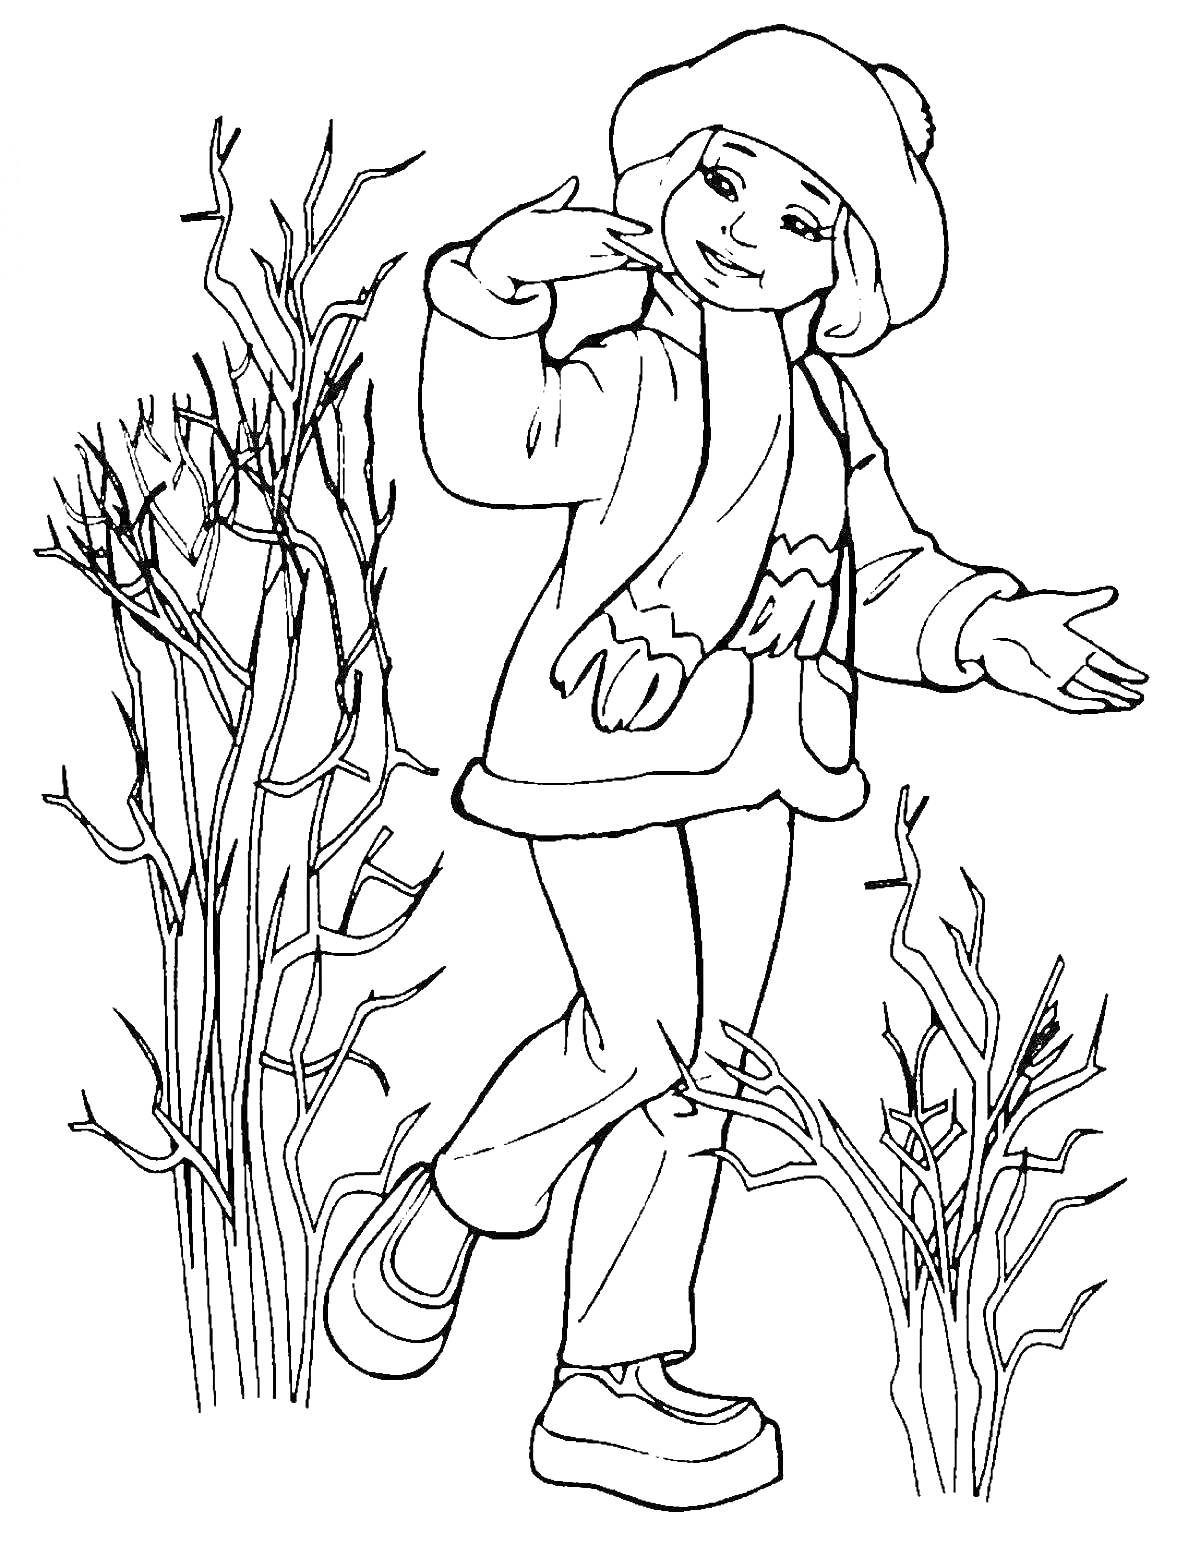 Девочка в весенней одежде среди деревьев с почками